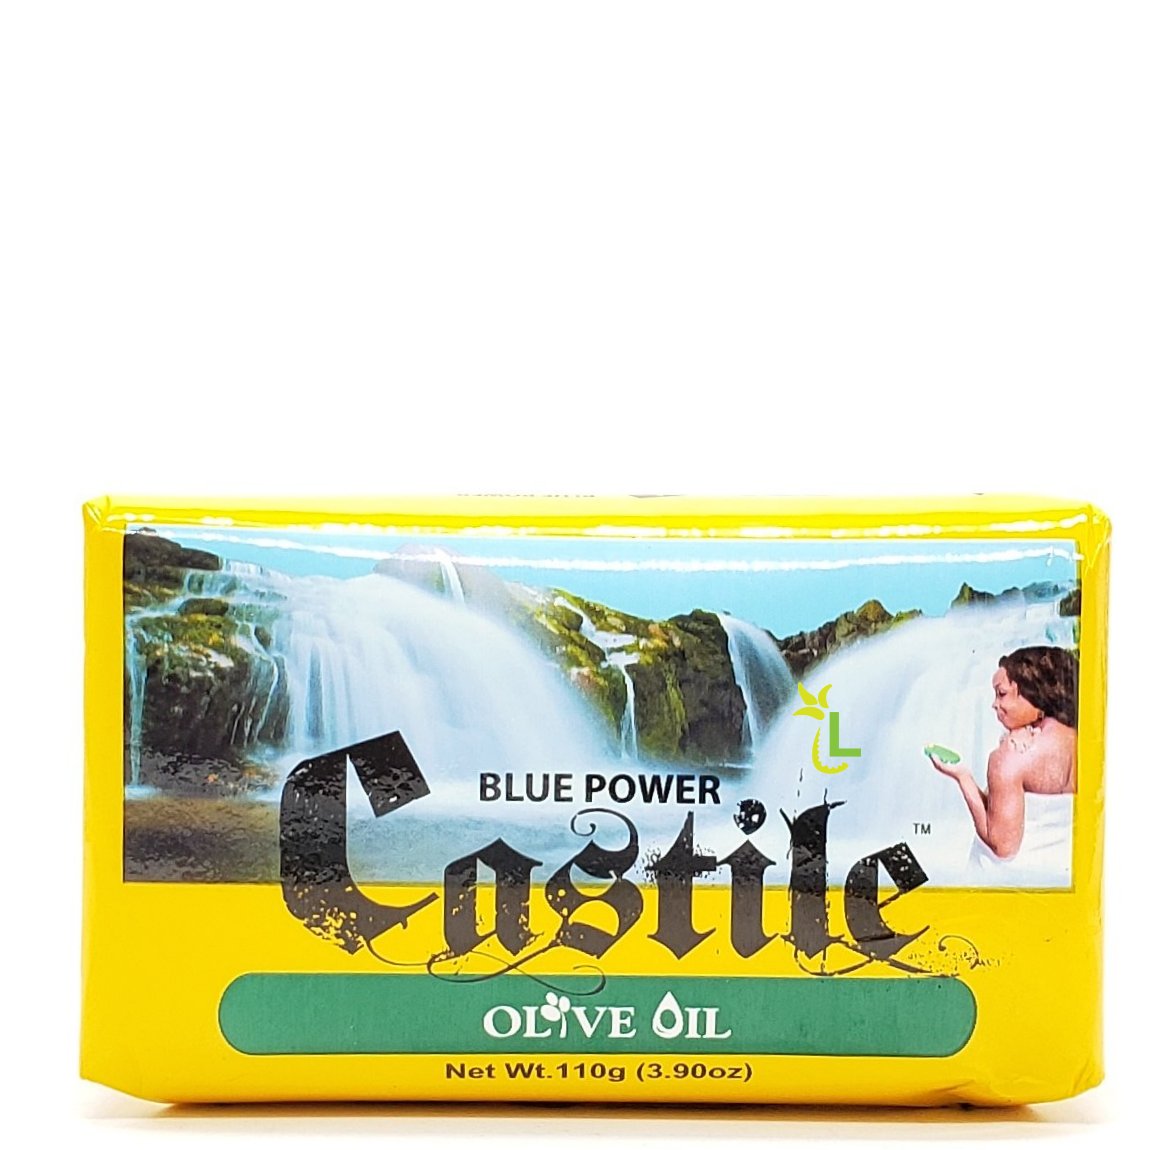 Blue Power Castile Olive Oil 110g